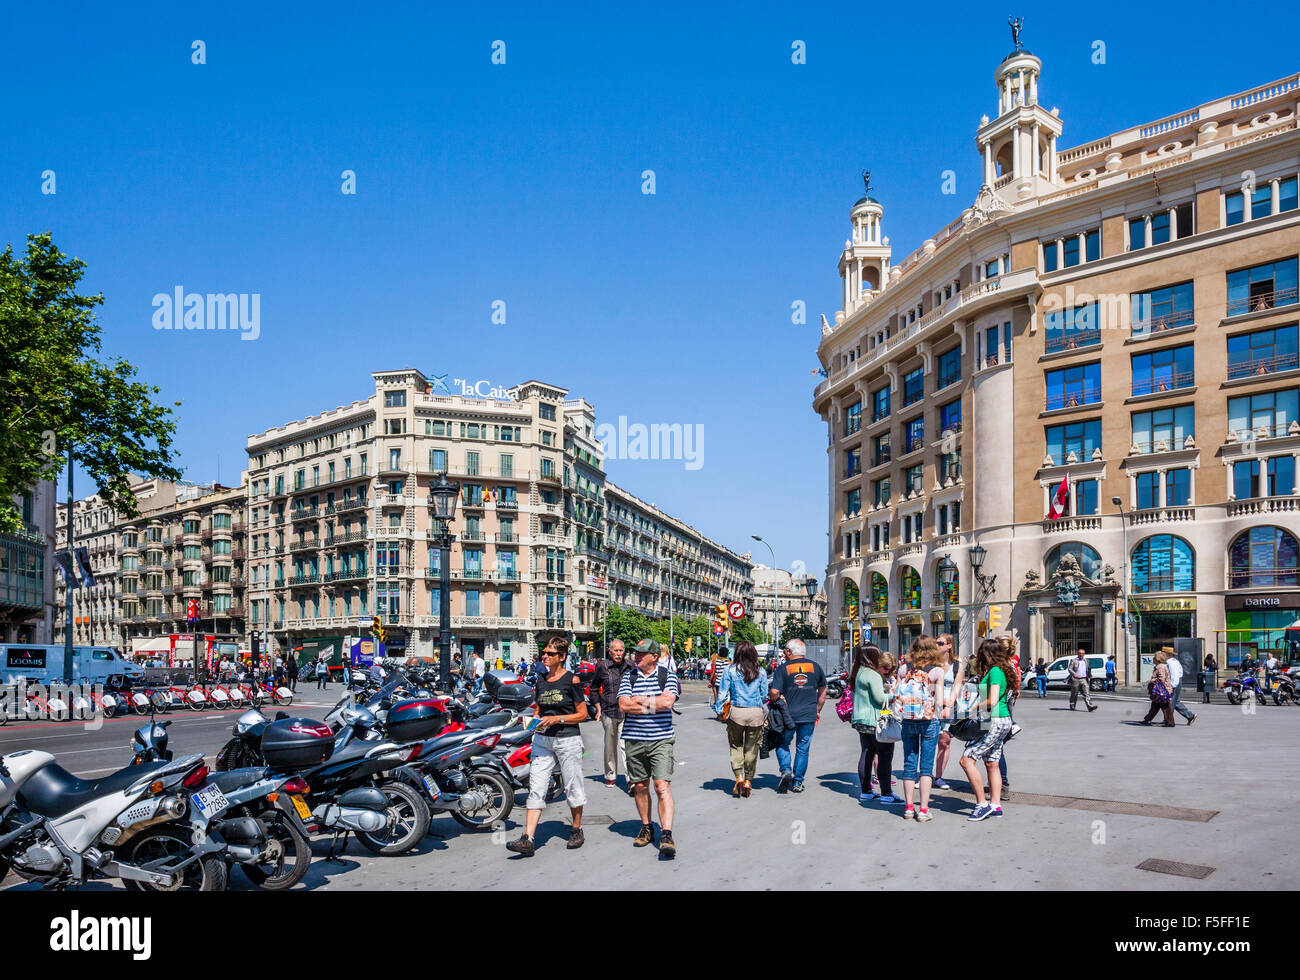 Spagna, catatonia, Barcelona, Plaça de Catalunya, grande piazza nel centro della città Foto Stock